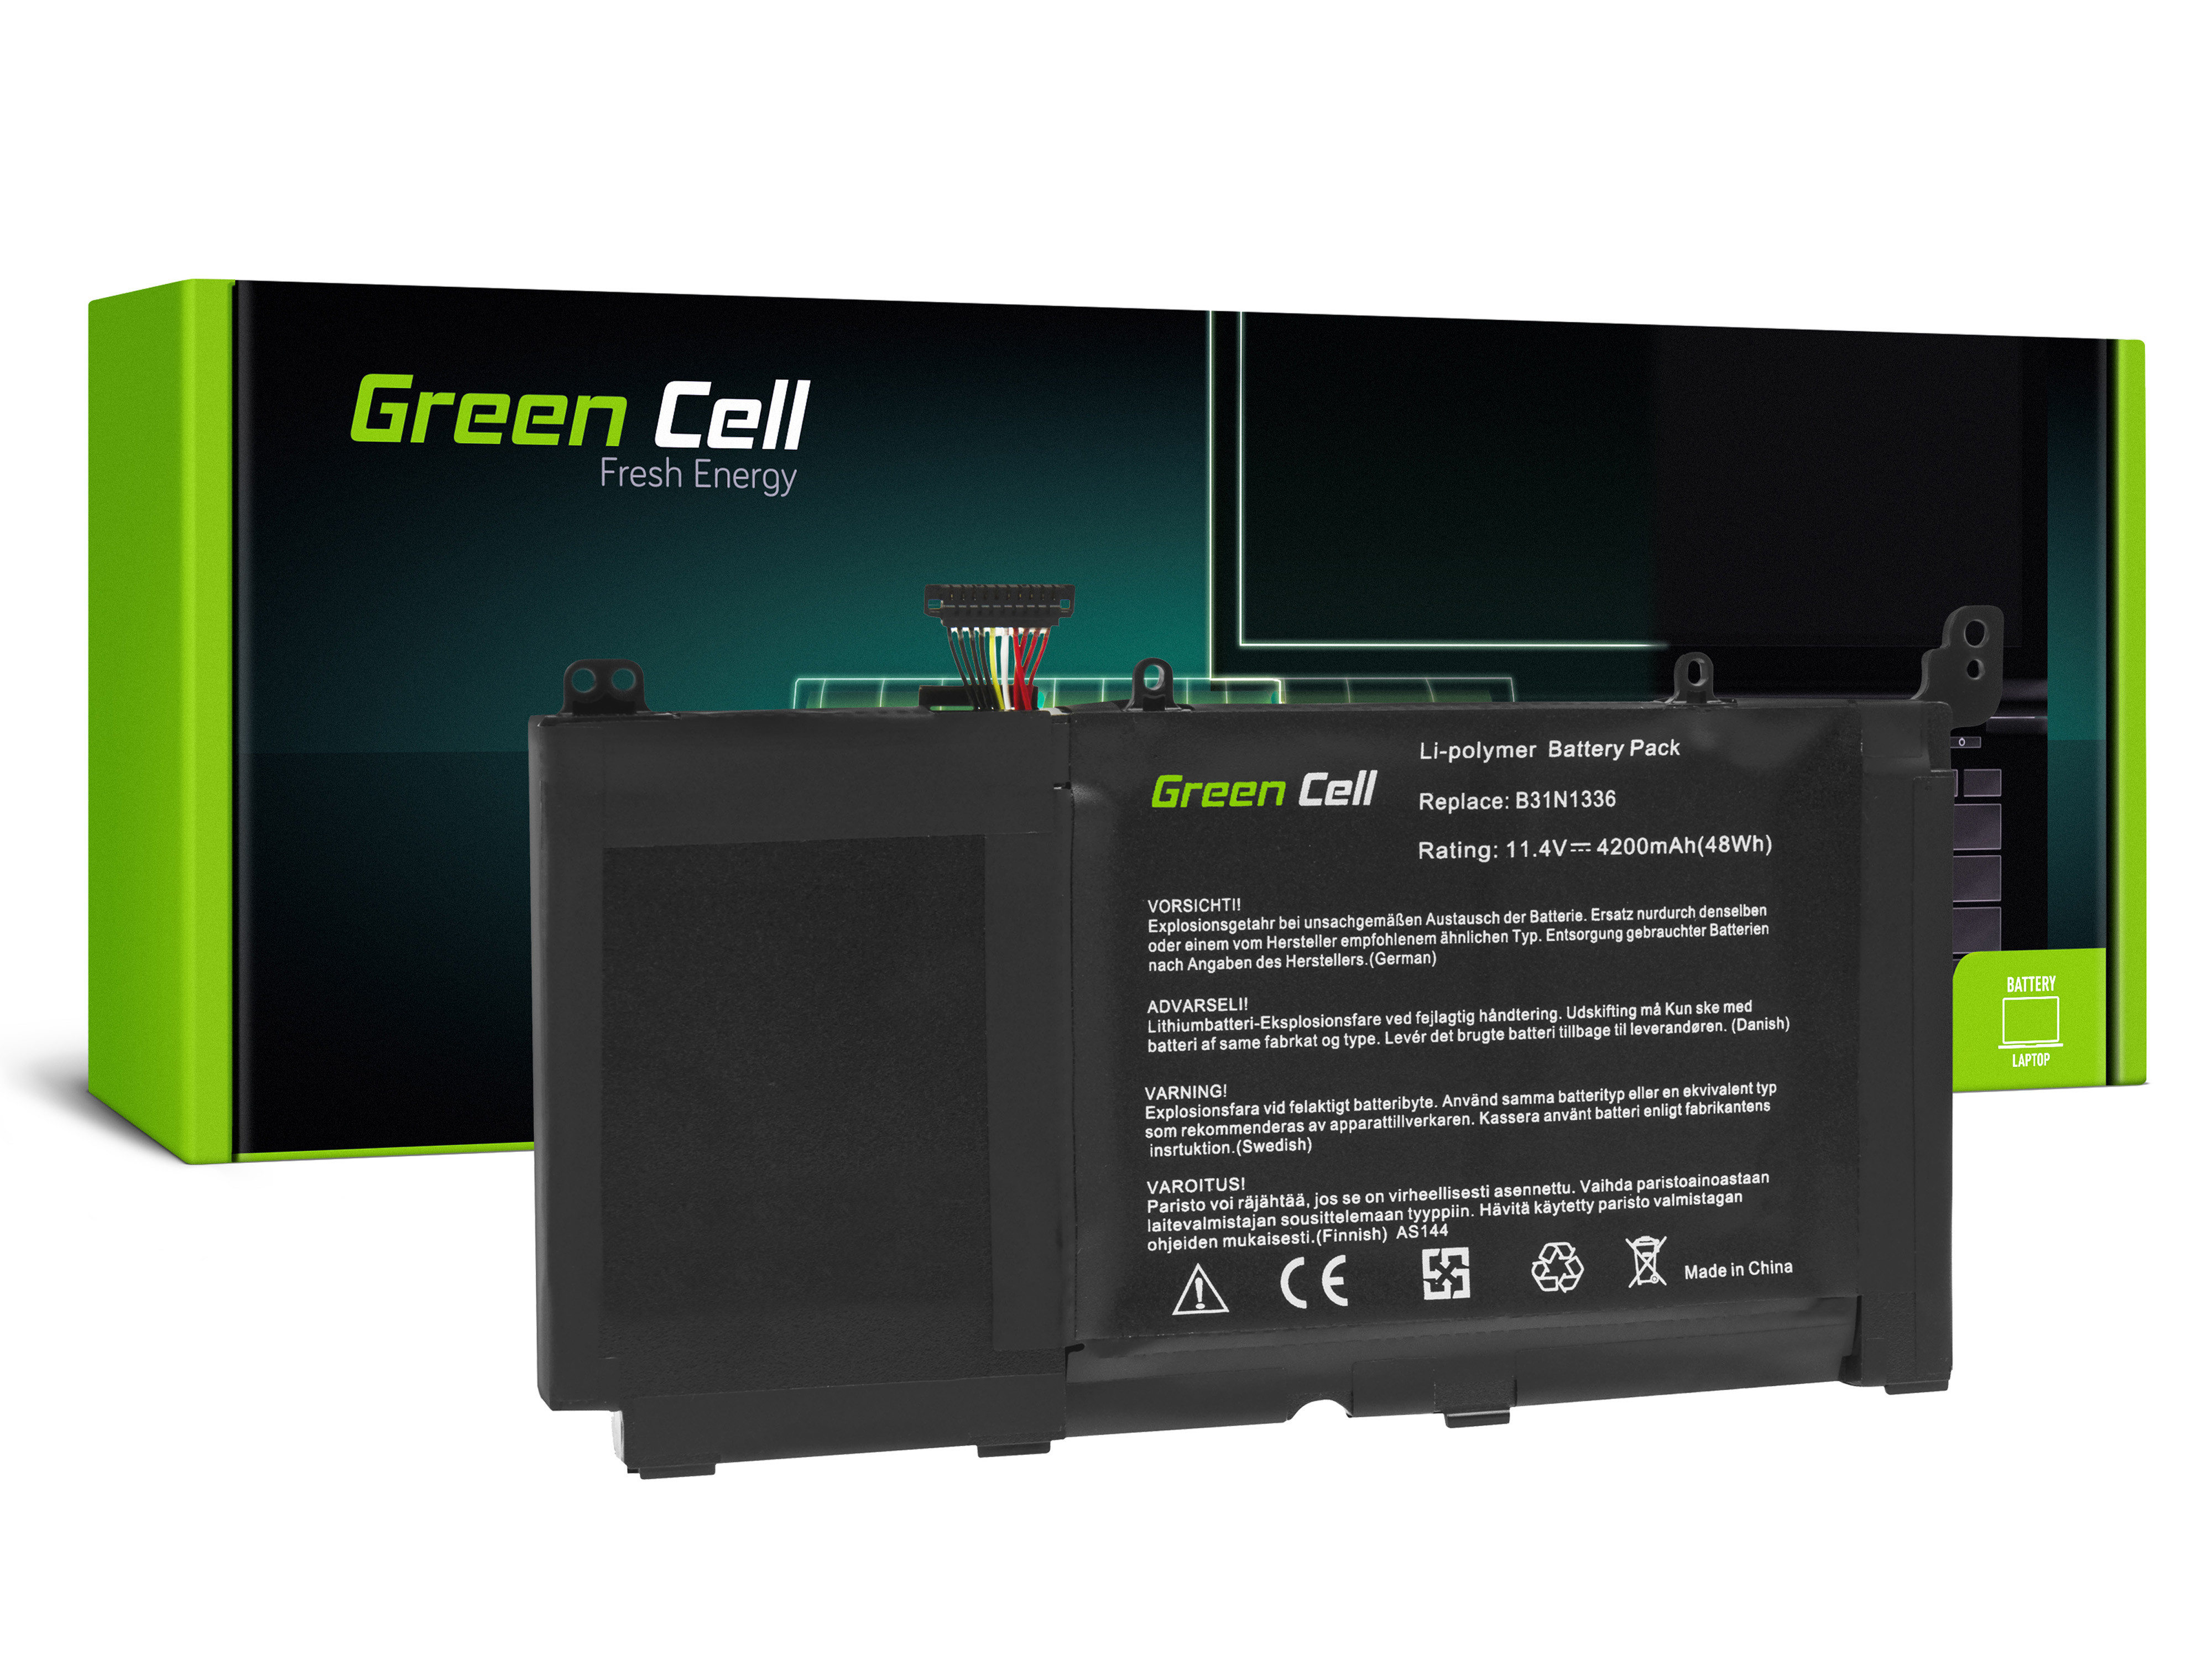 Green Cell AS144 Baterie Asus B31N1336, Asus R553 R553L R553LN 4200mAh Li-Pol – neoriginální